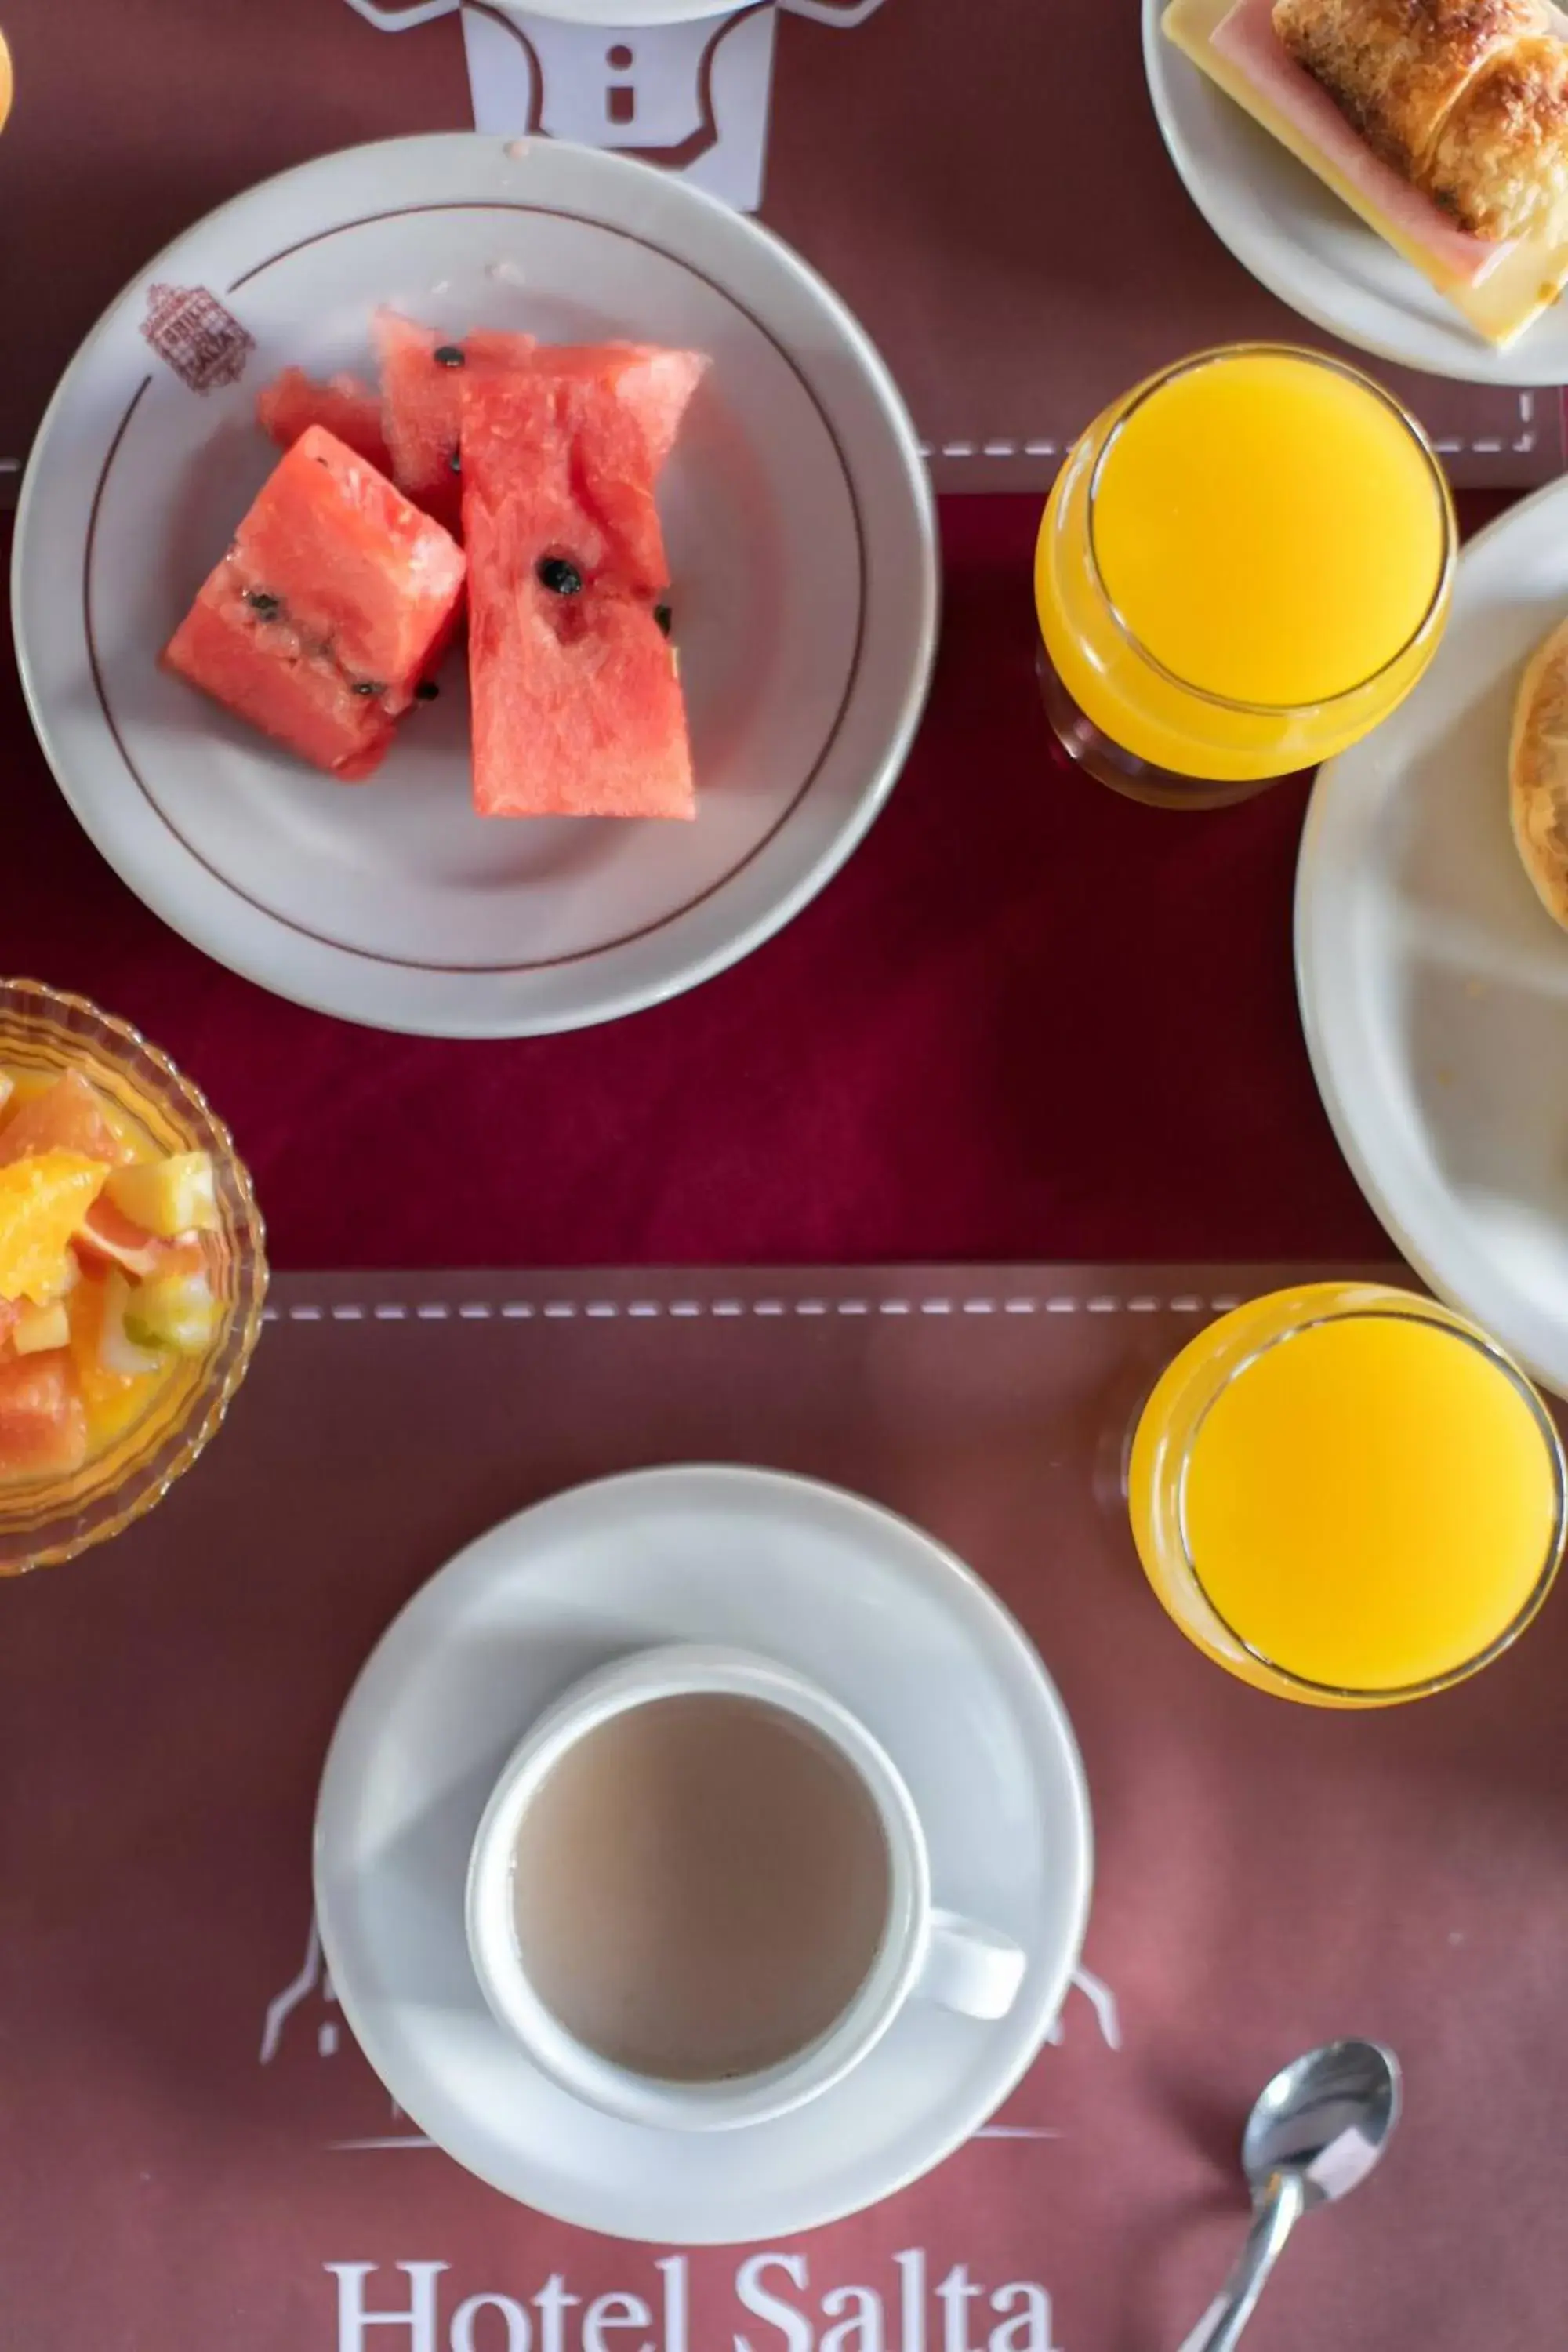 Breakfast in Hotel Salta